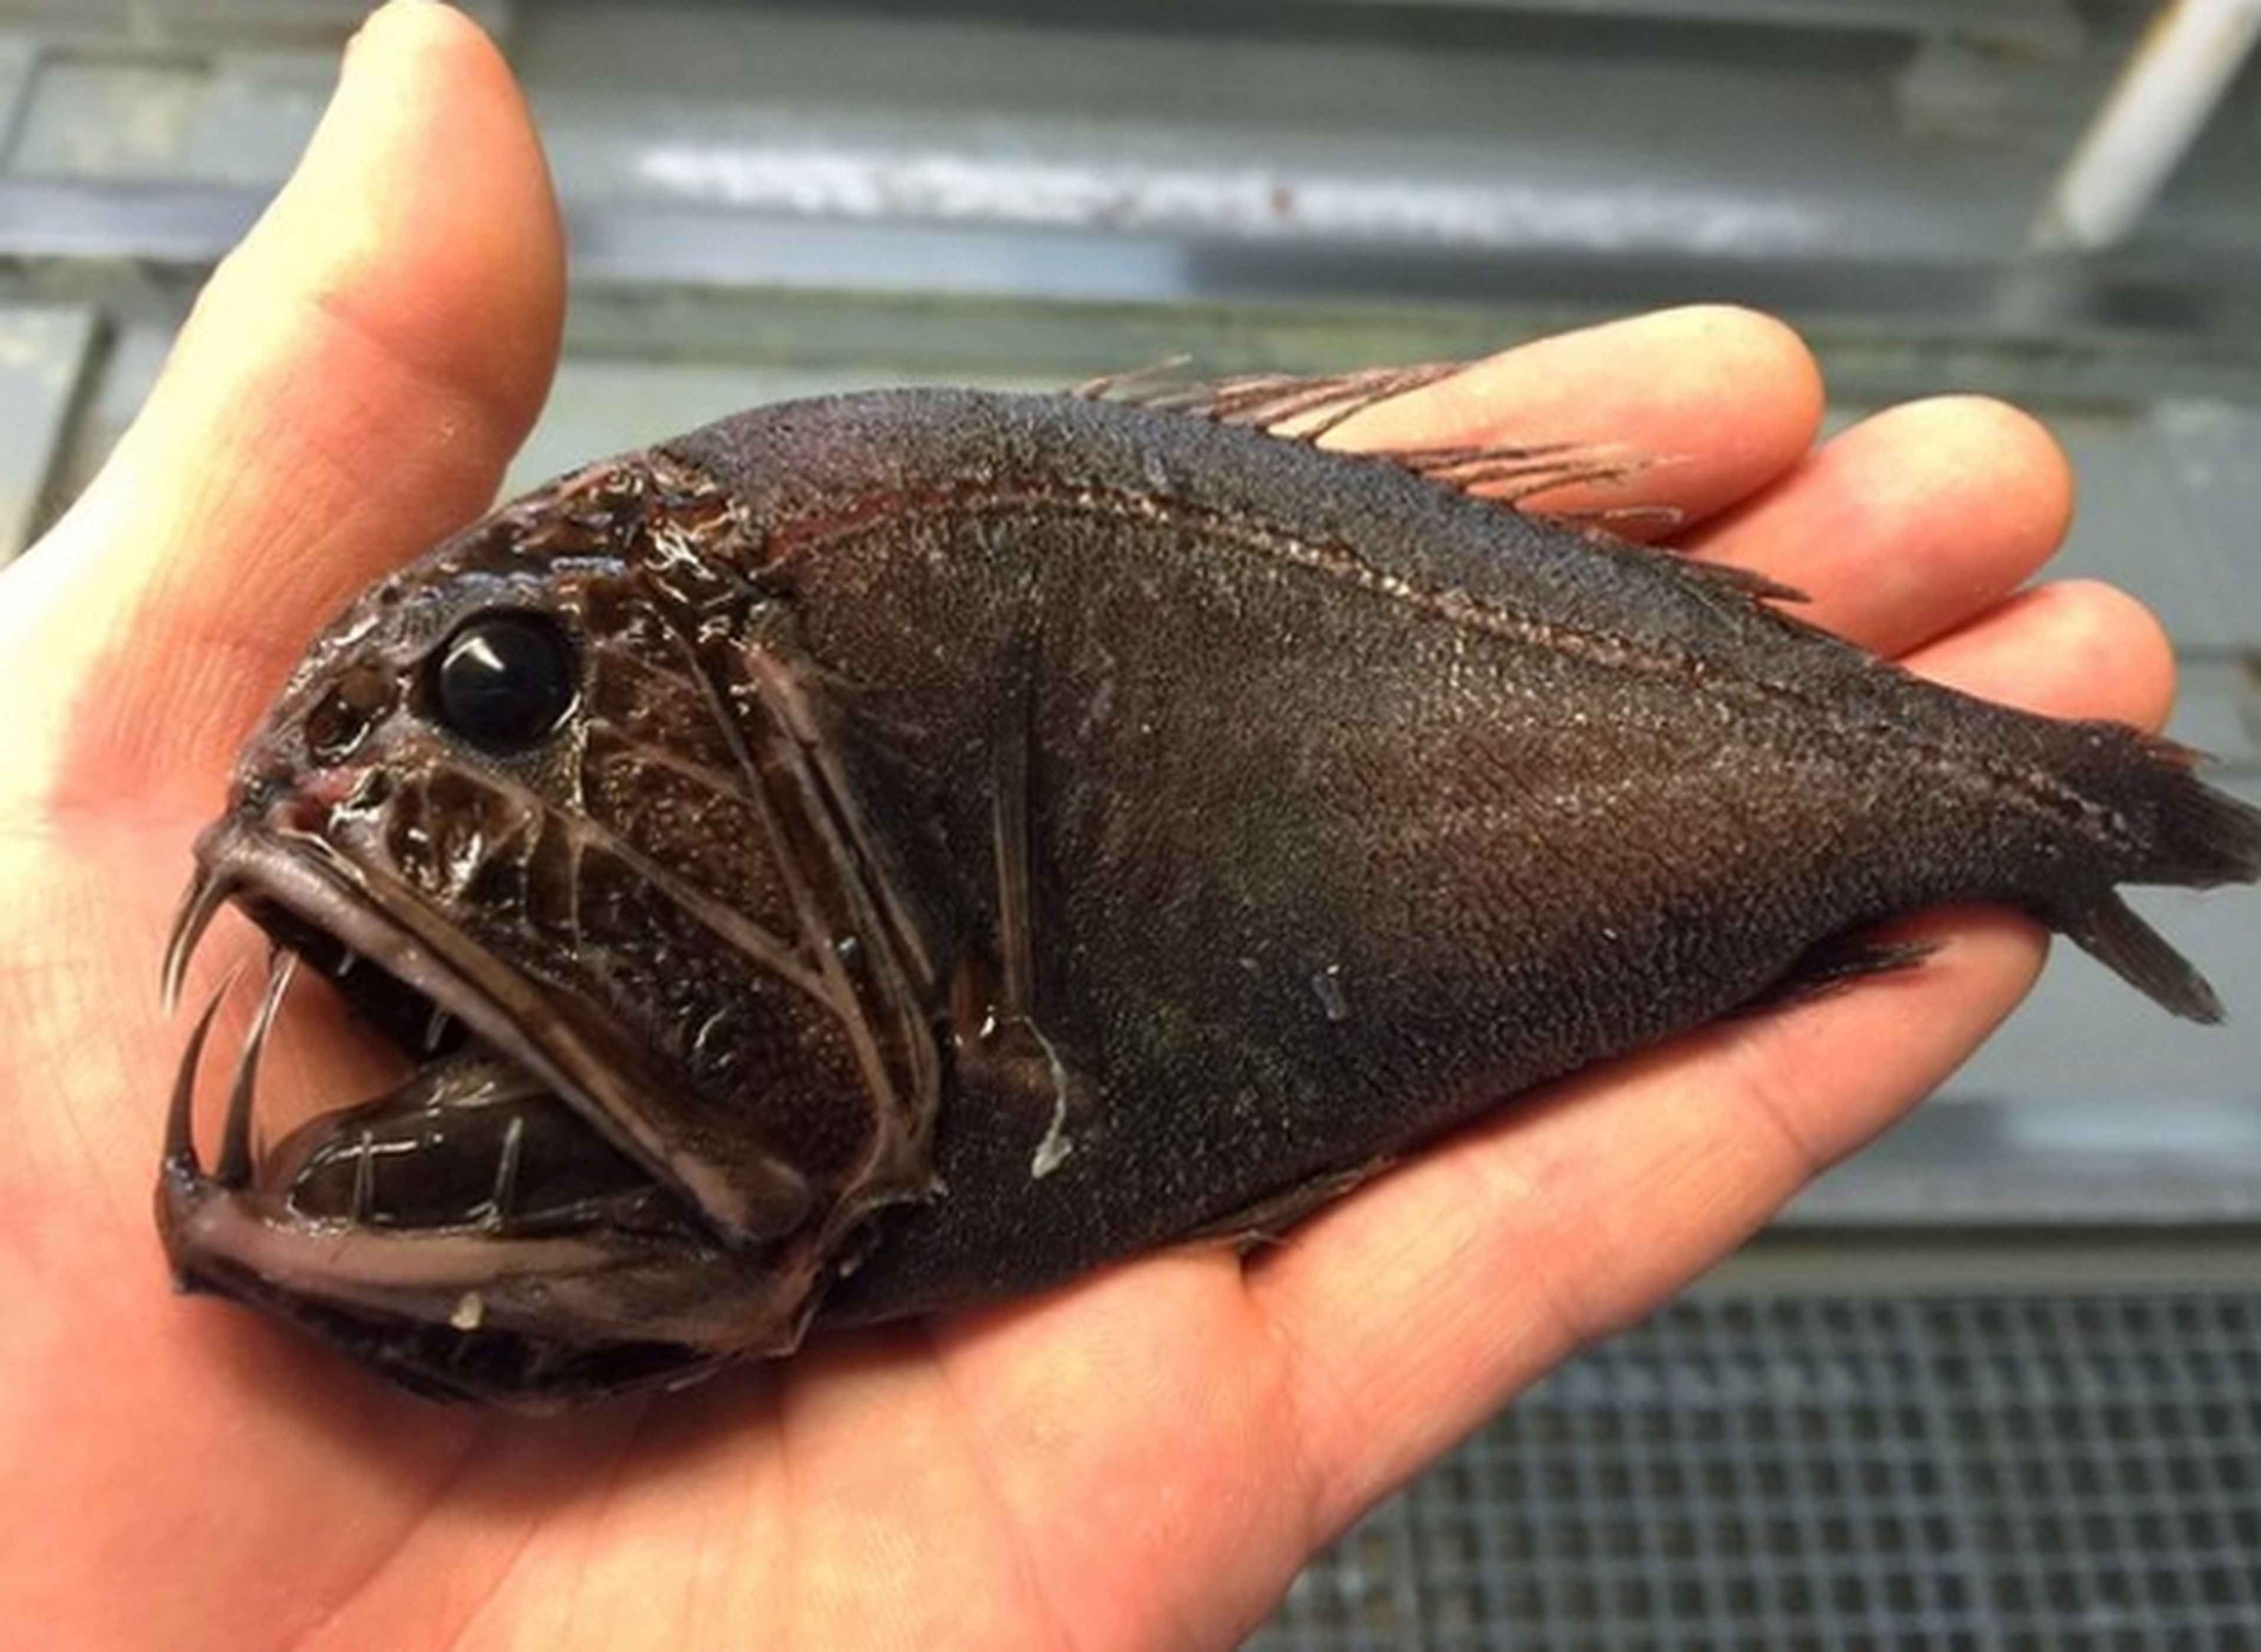 Un pescador muestra en Twitter los peces más terroríficos